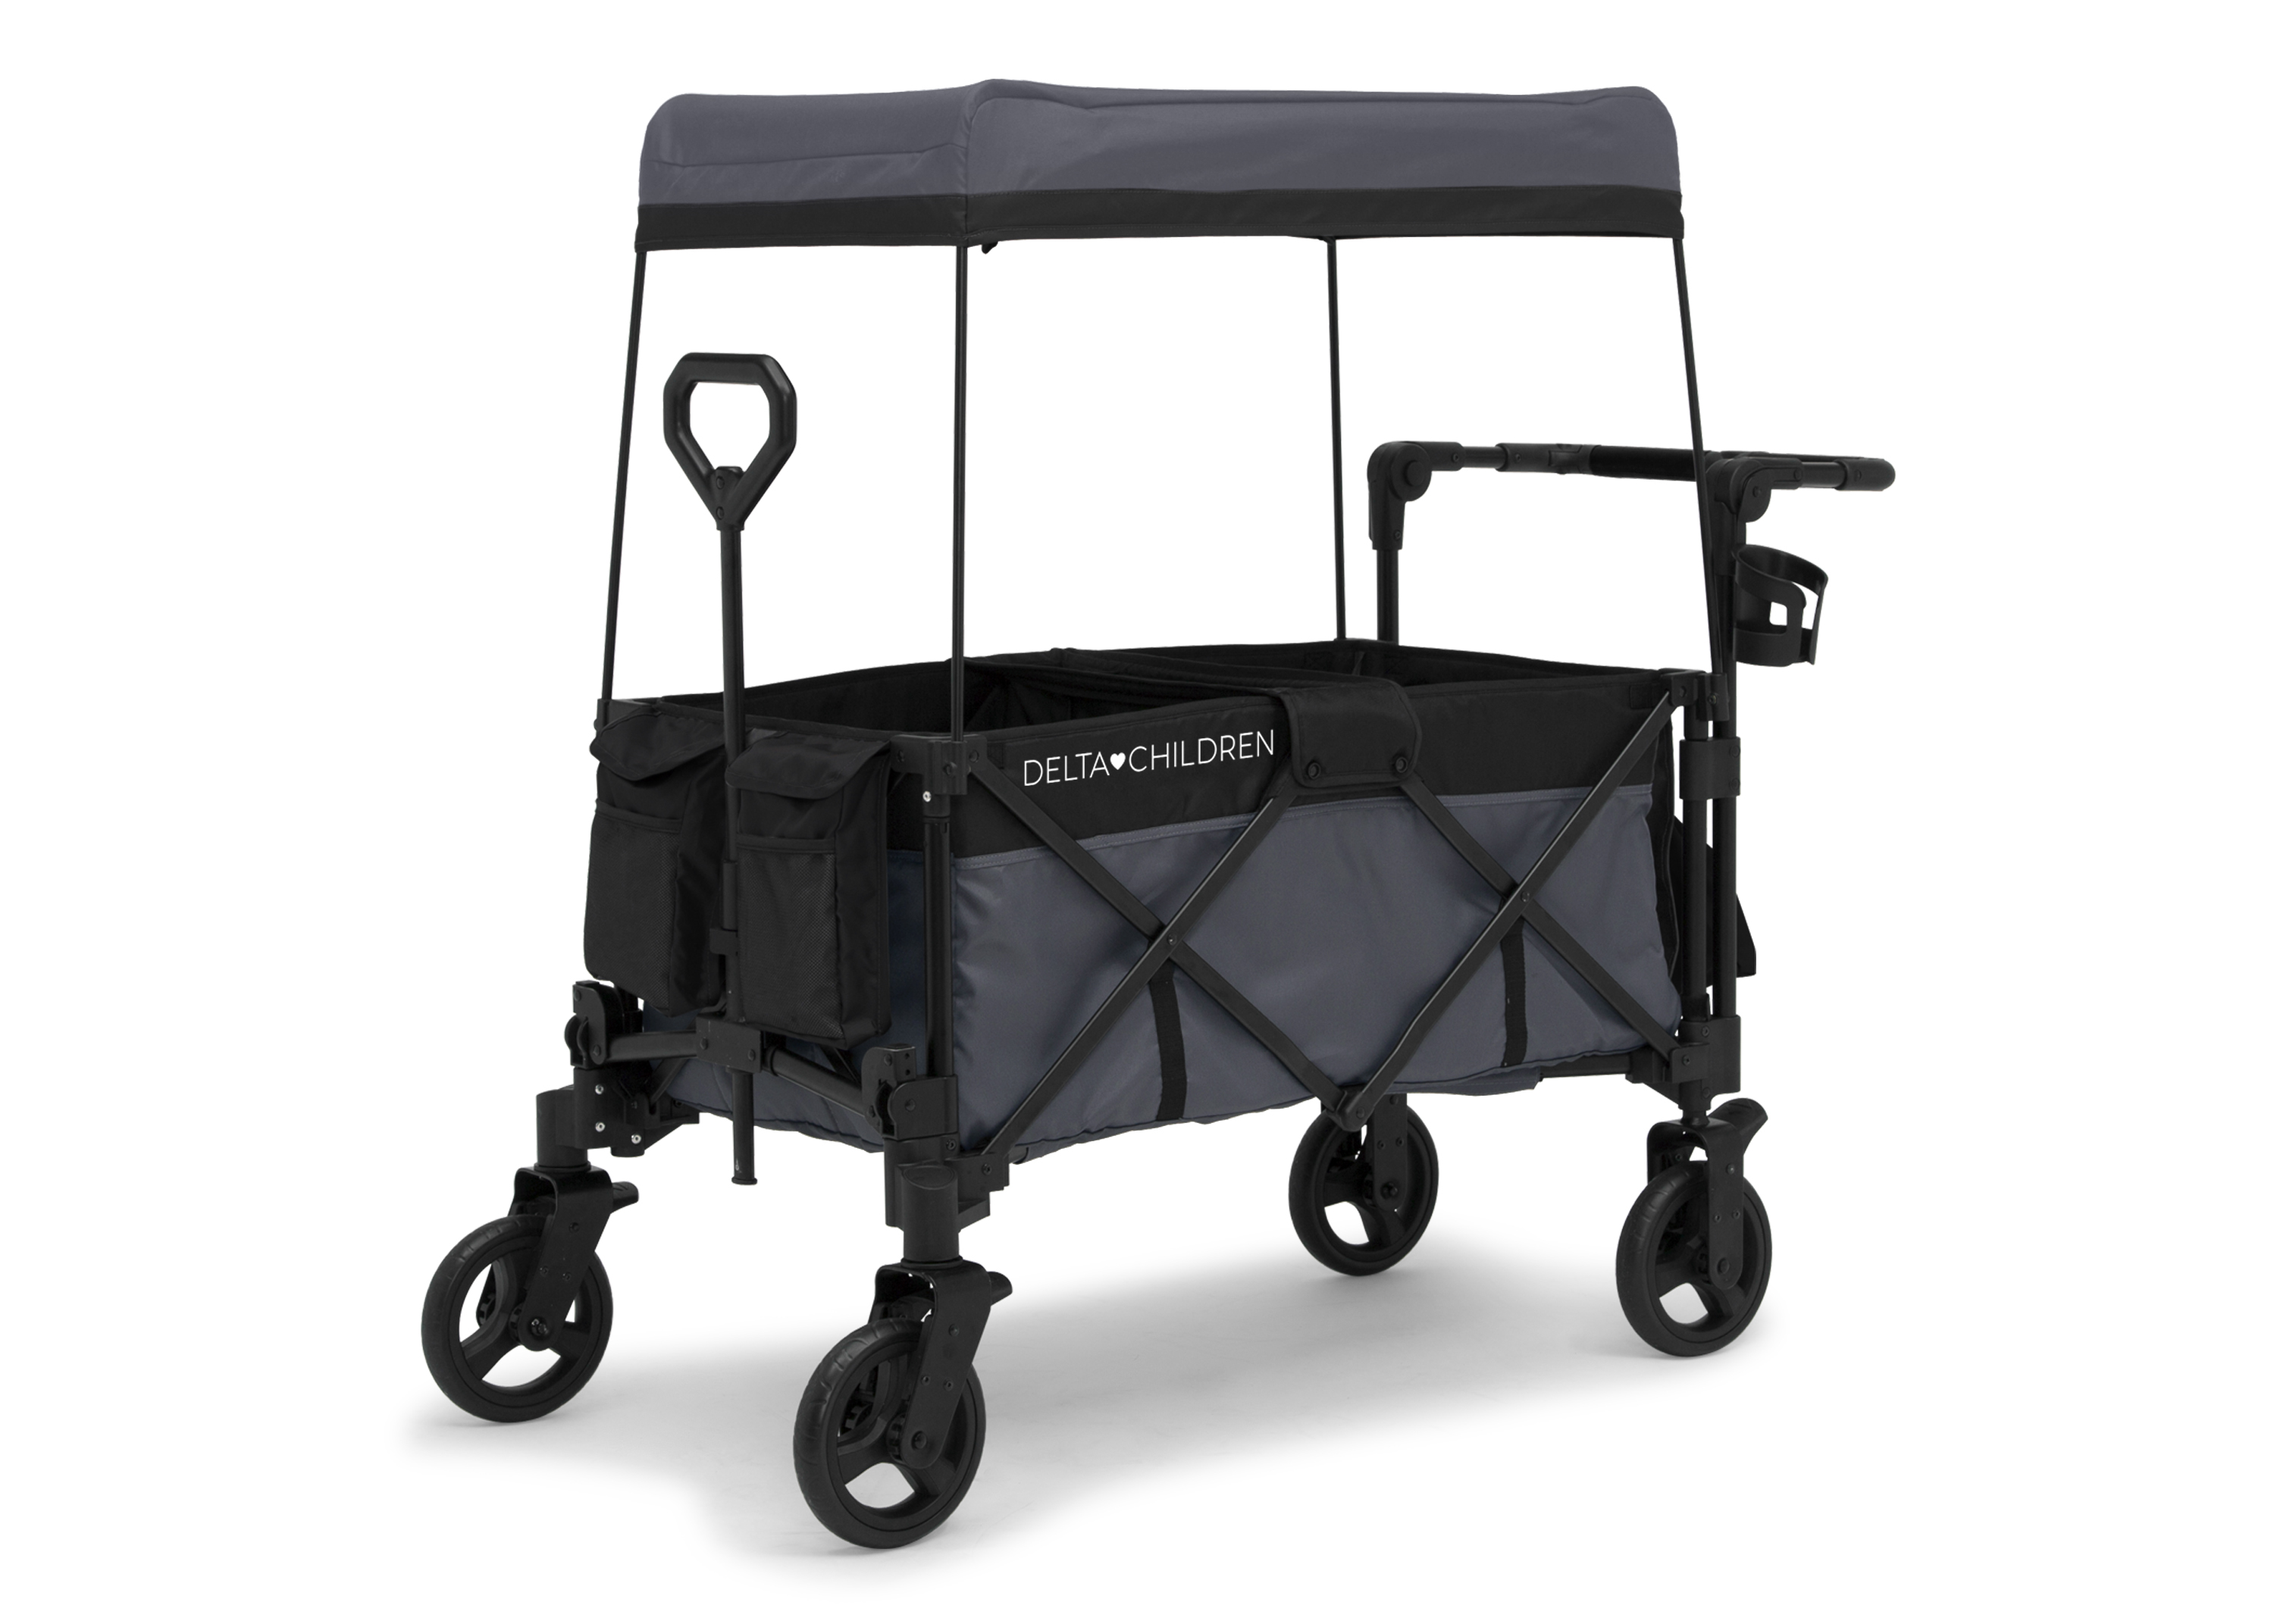 Delta Children Adventure Stroller Wagon, Grey/Black - image 1 of 10